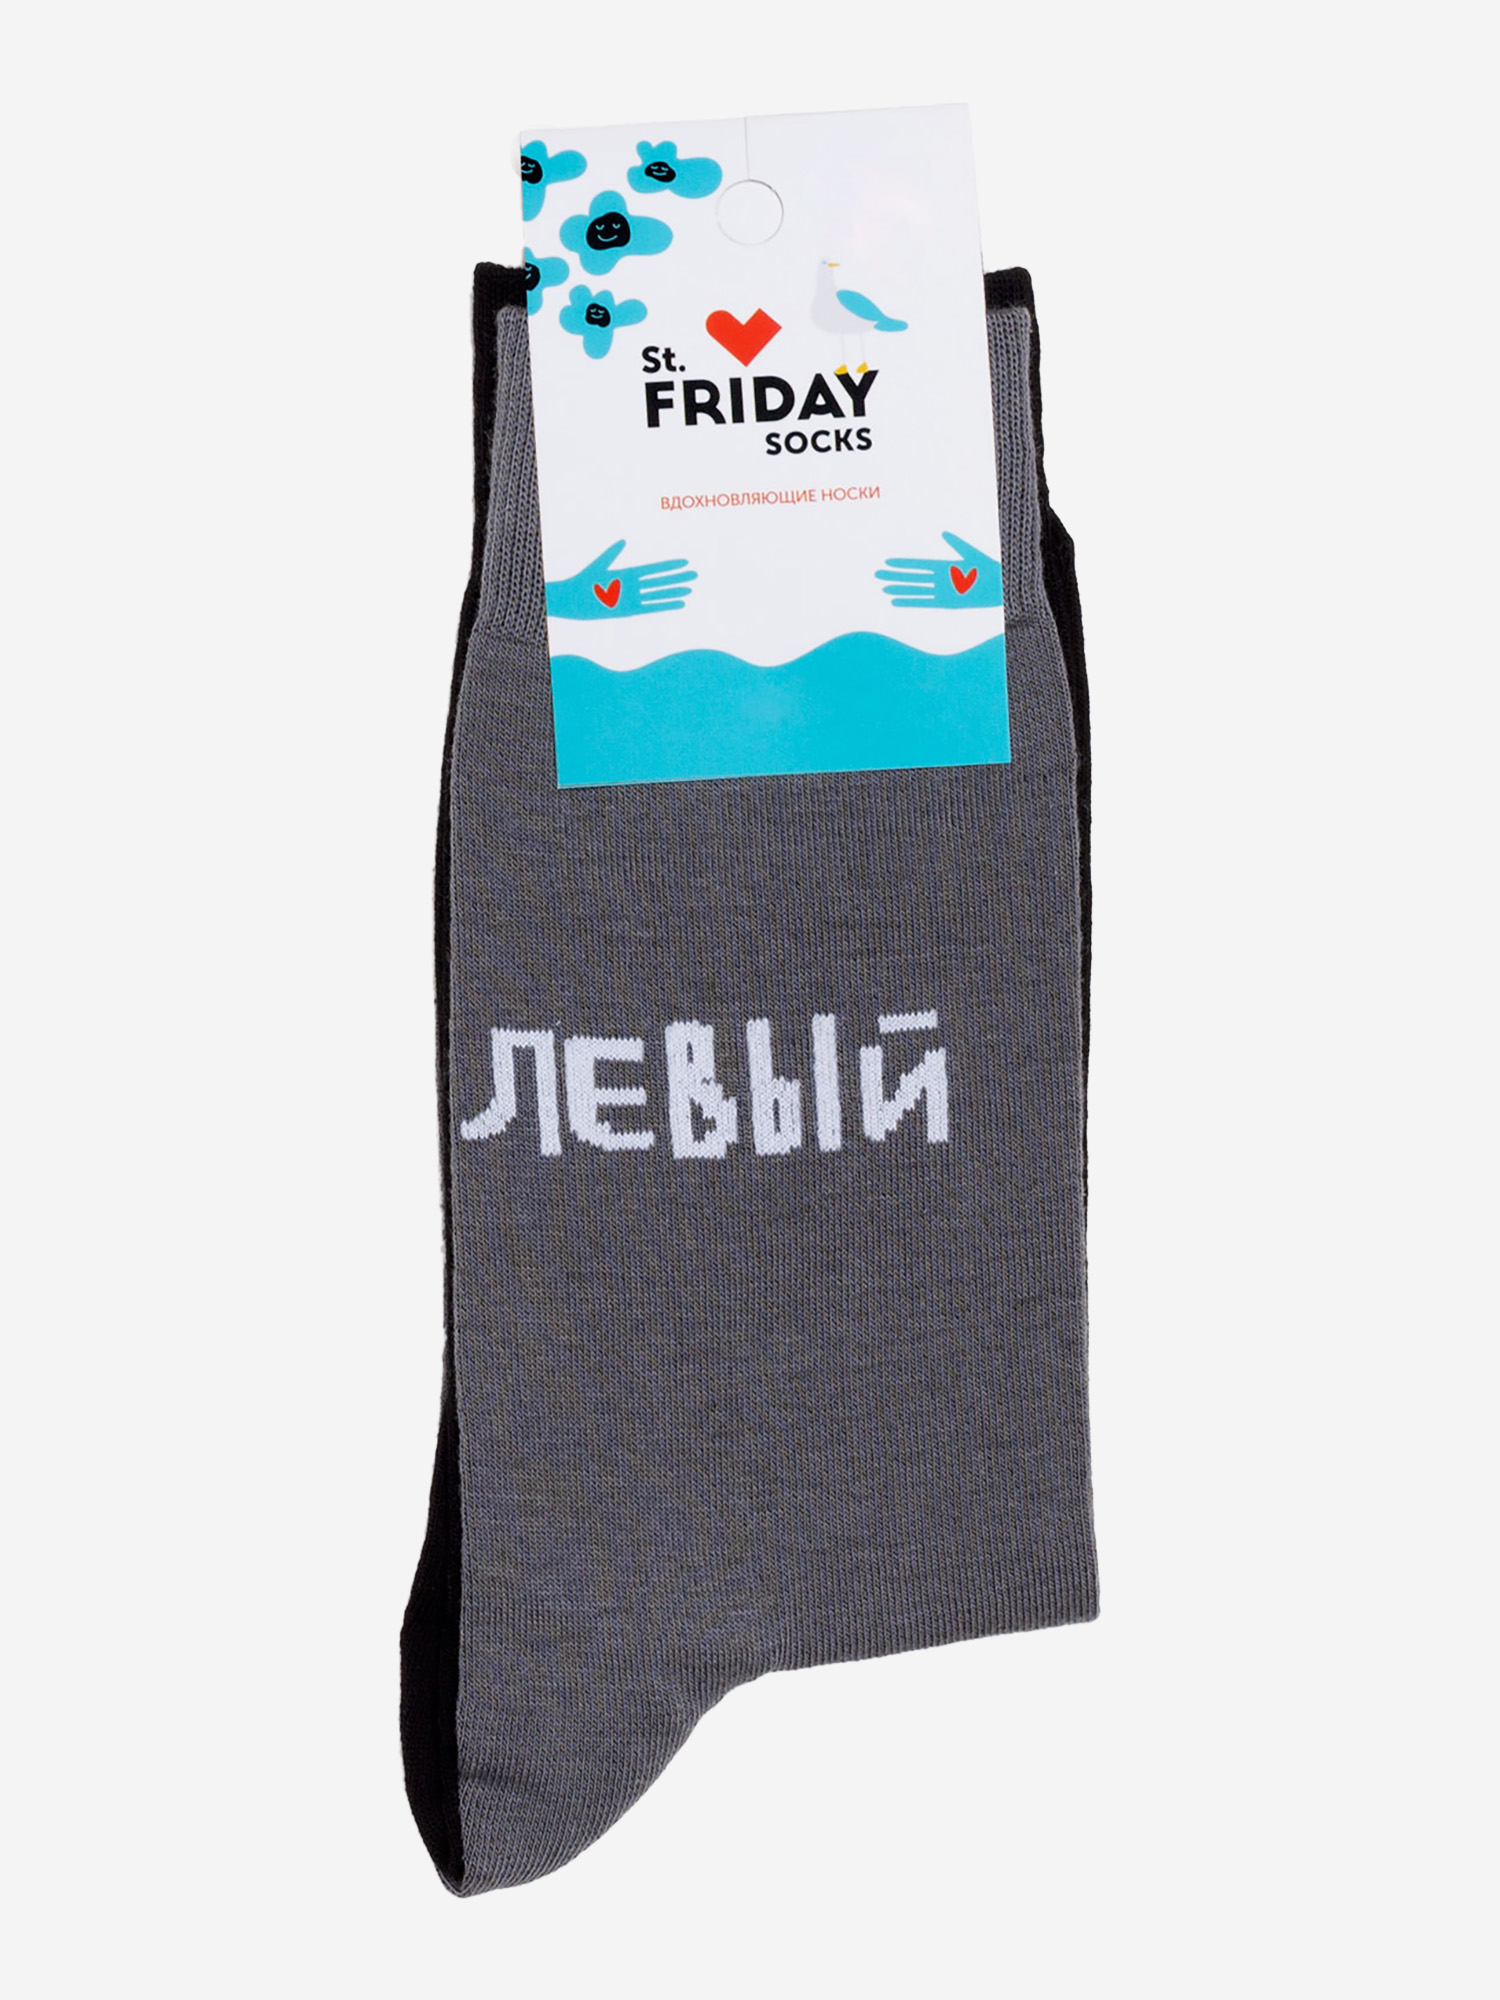 Носки с рисунками St.Friday Socks - Левый, Левый, Серый носки x socks trek dual 1 пара серый